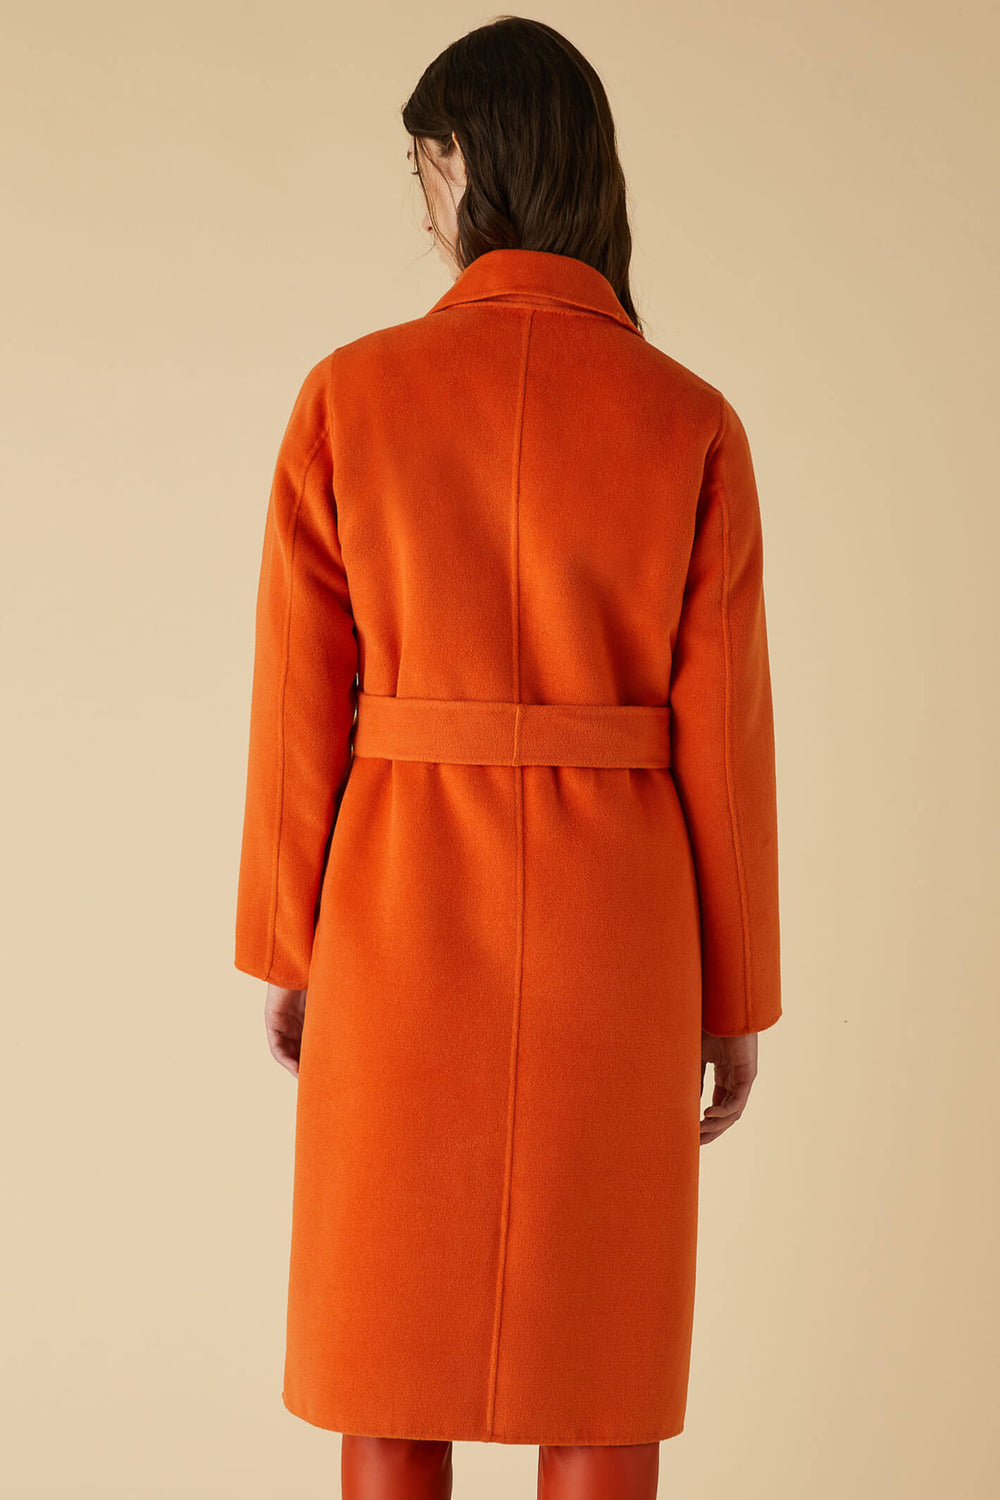 Emme Amazing 2350160339200 Orange Coat - Olivia Grace Fashion